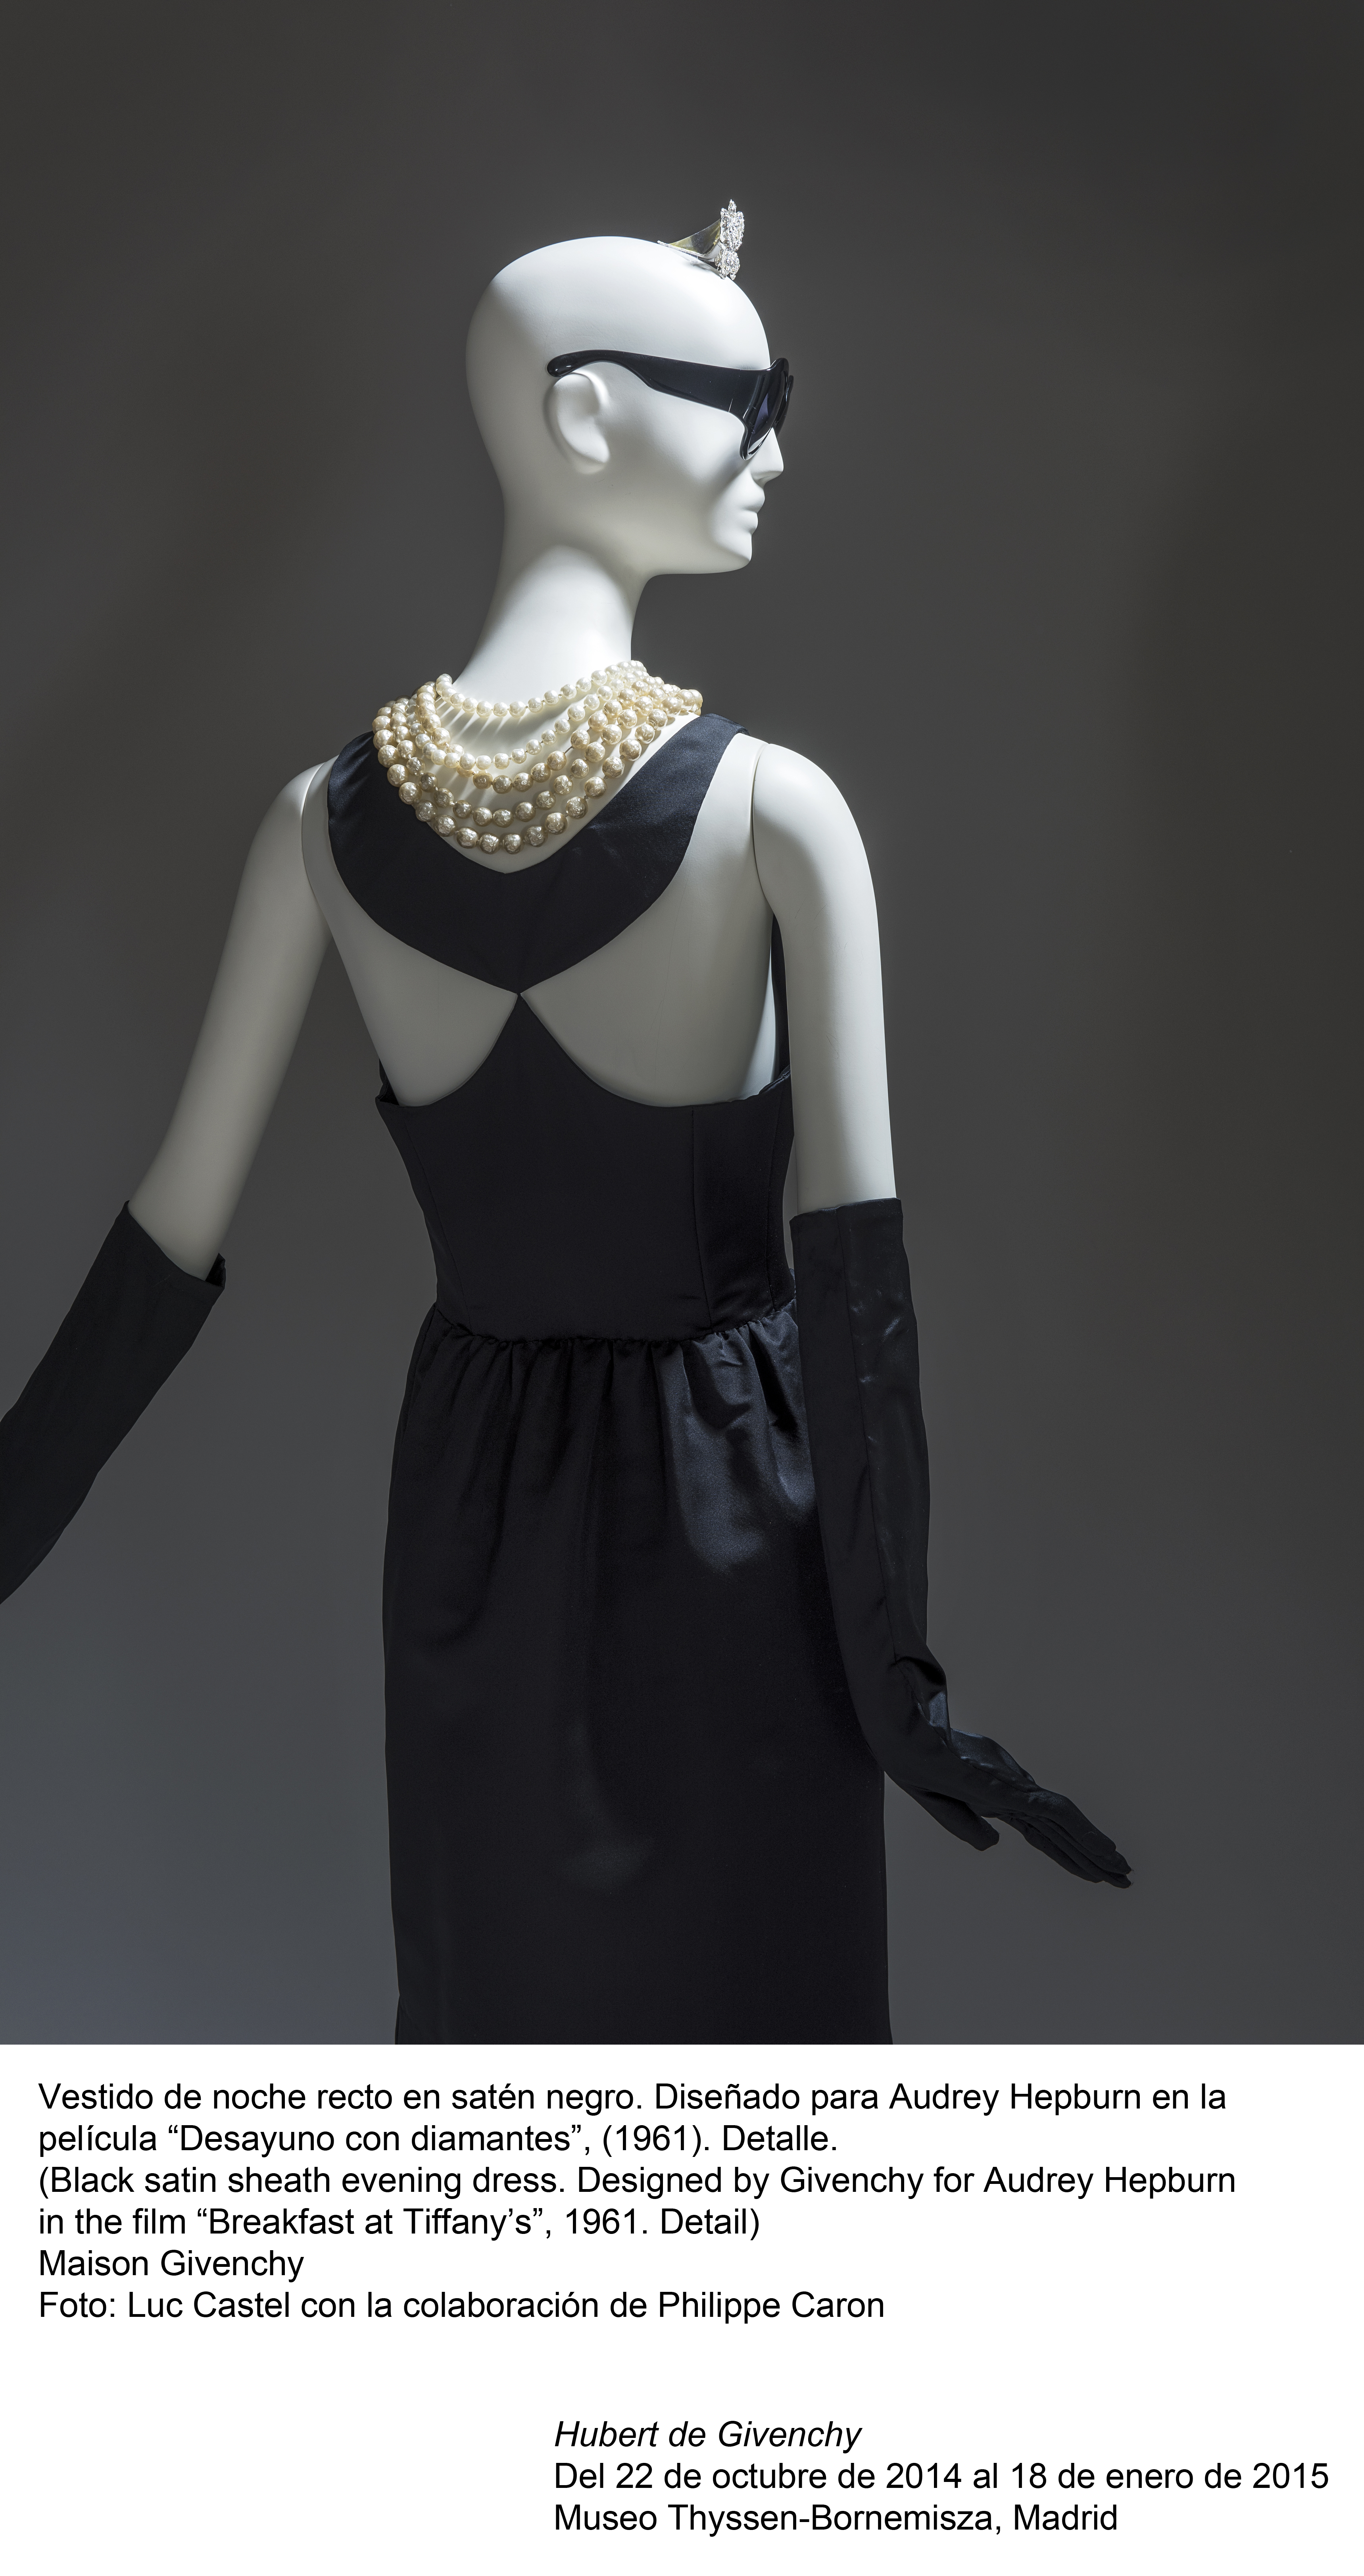 Μία αναδρομική έκθεση αποκαλύπτει τα μυστικά του Givenchy